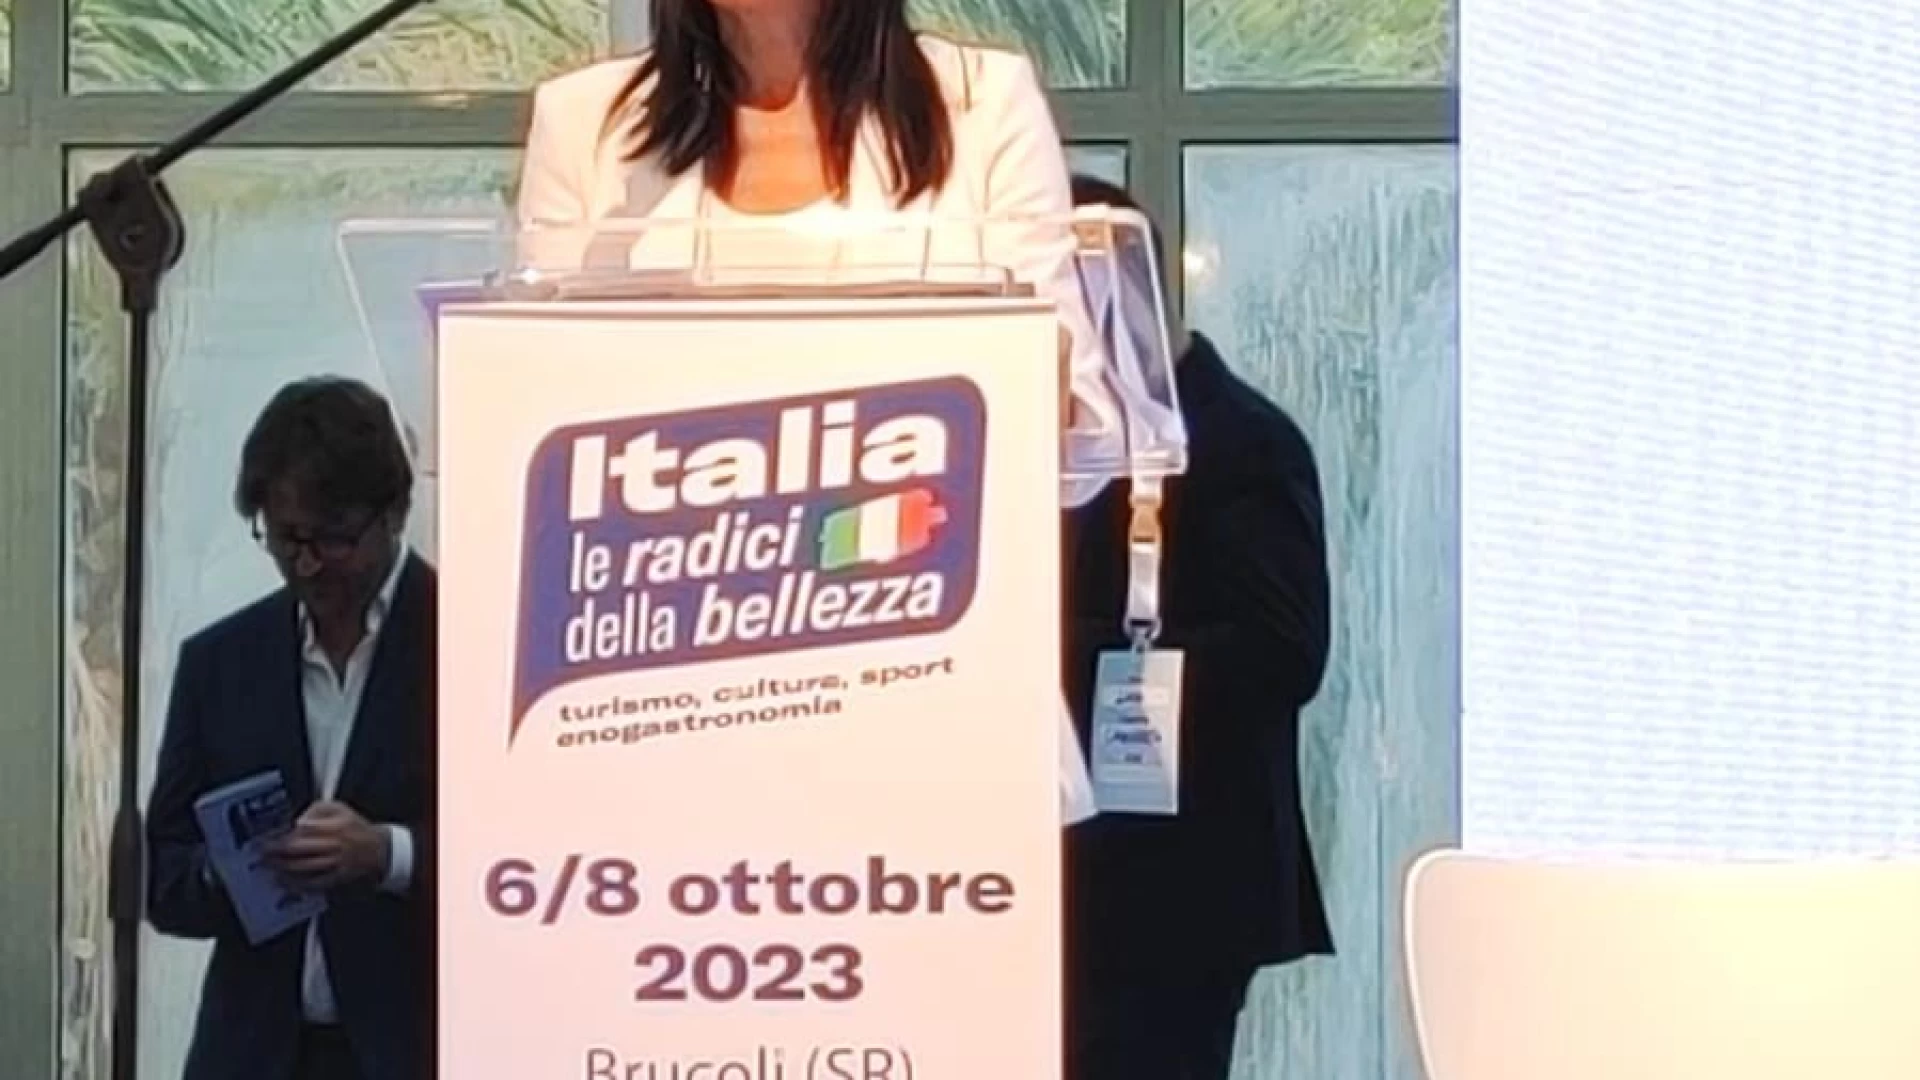 Lancellotta a Brucoli in Sicilia al convegno Turismo, Sport e grandi eventi. La deputata di Fratelli d’Italia protagonista di un interessante incontro.